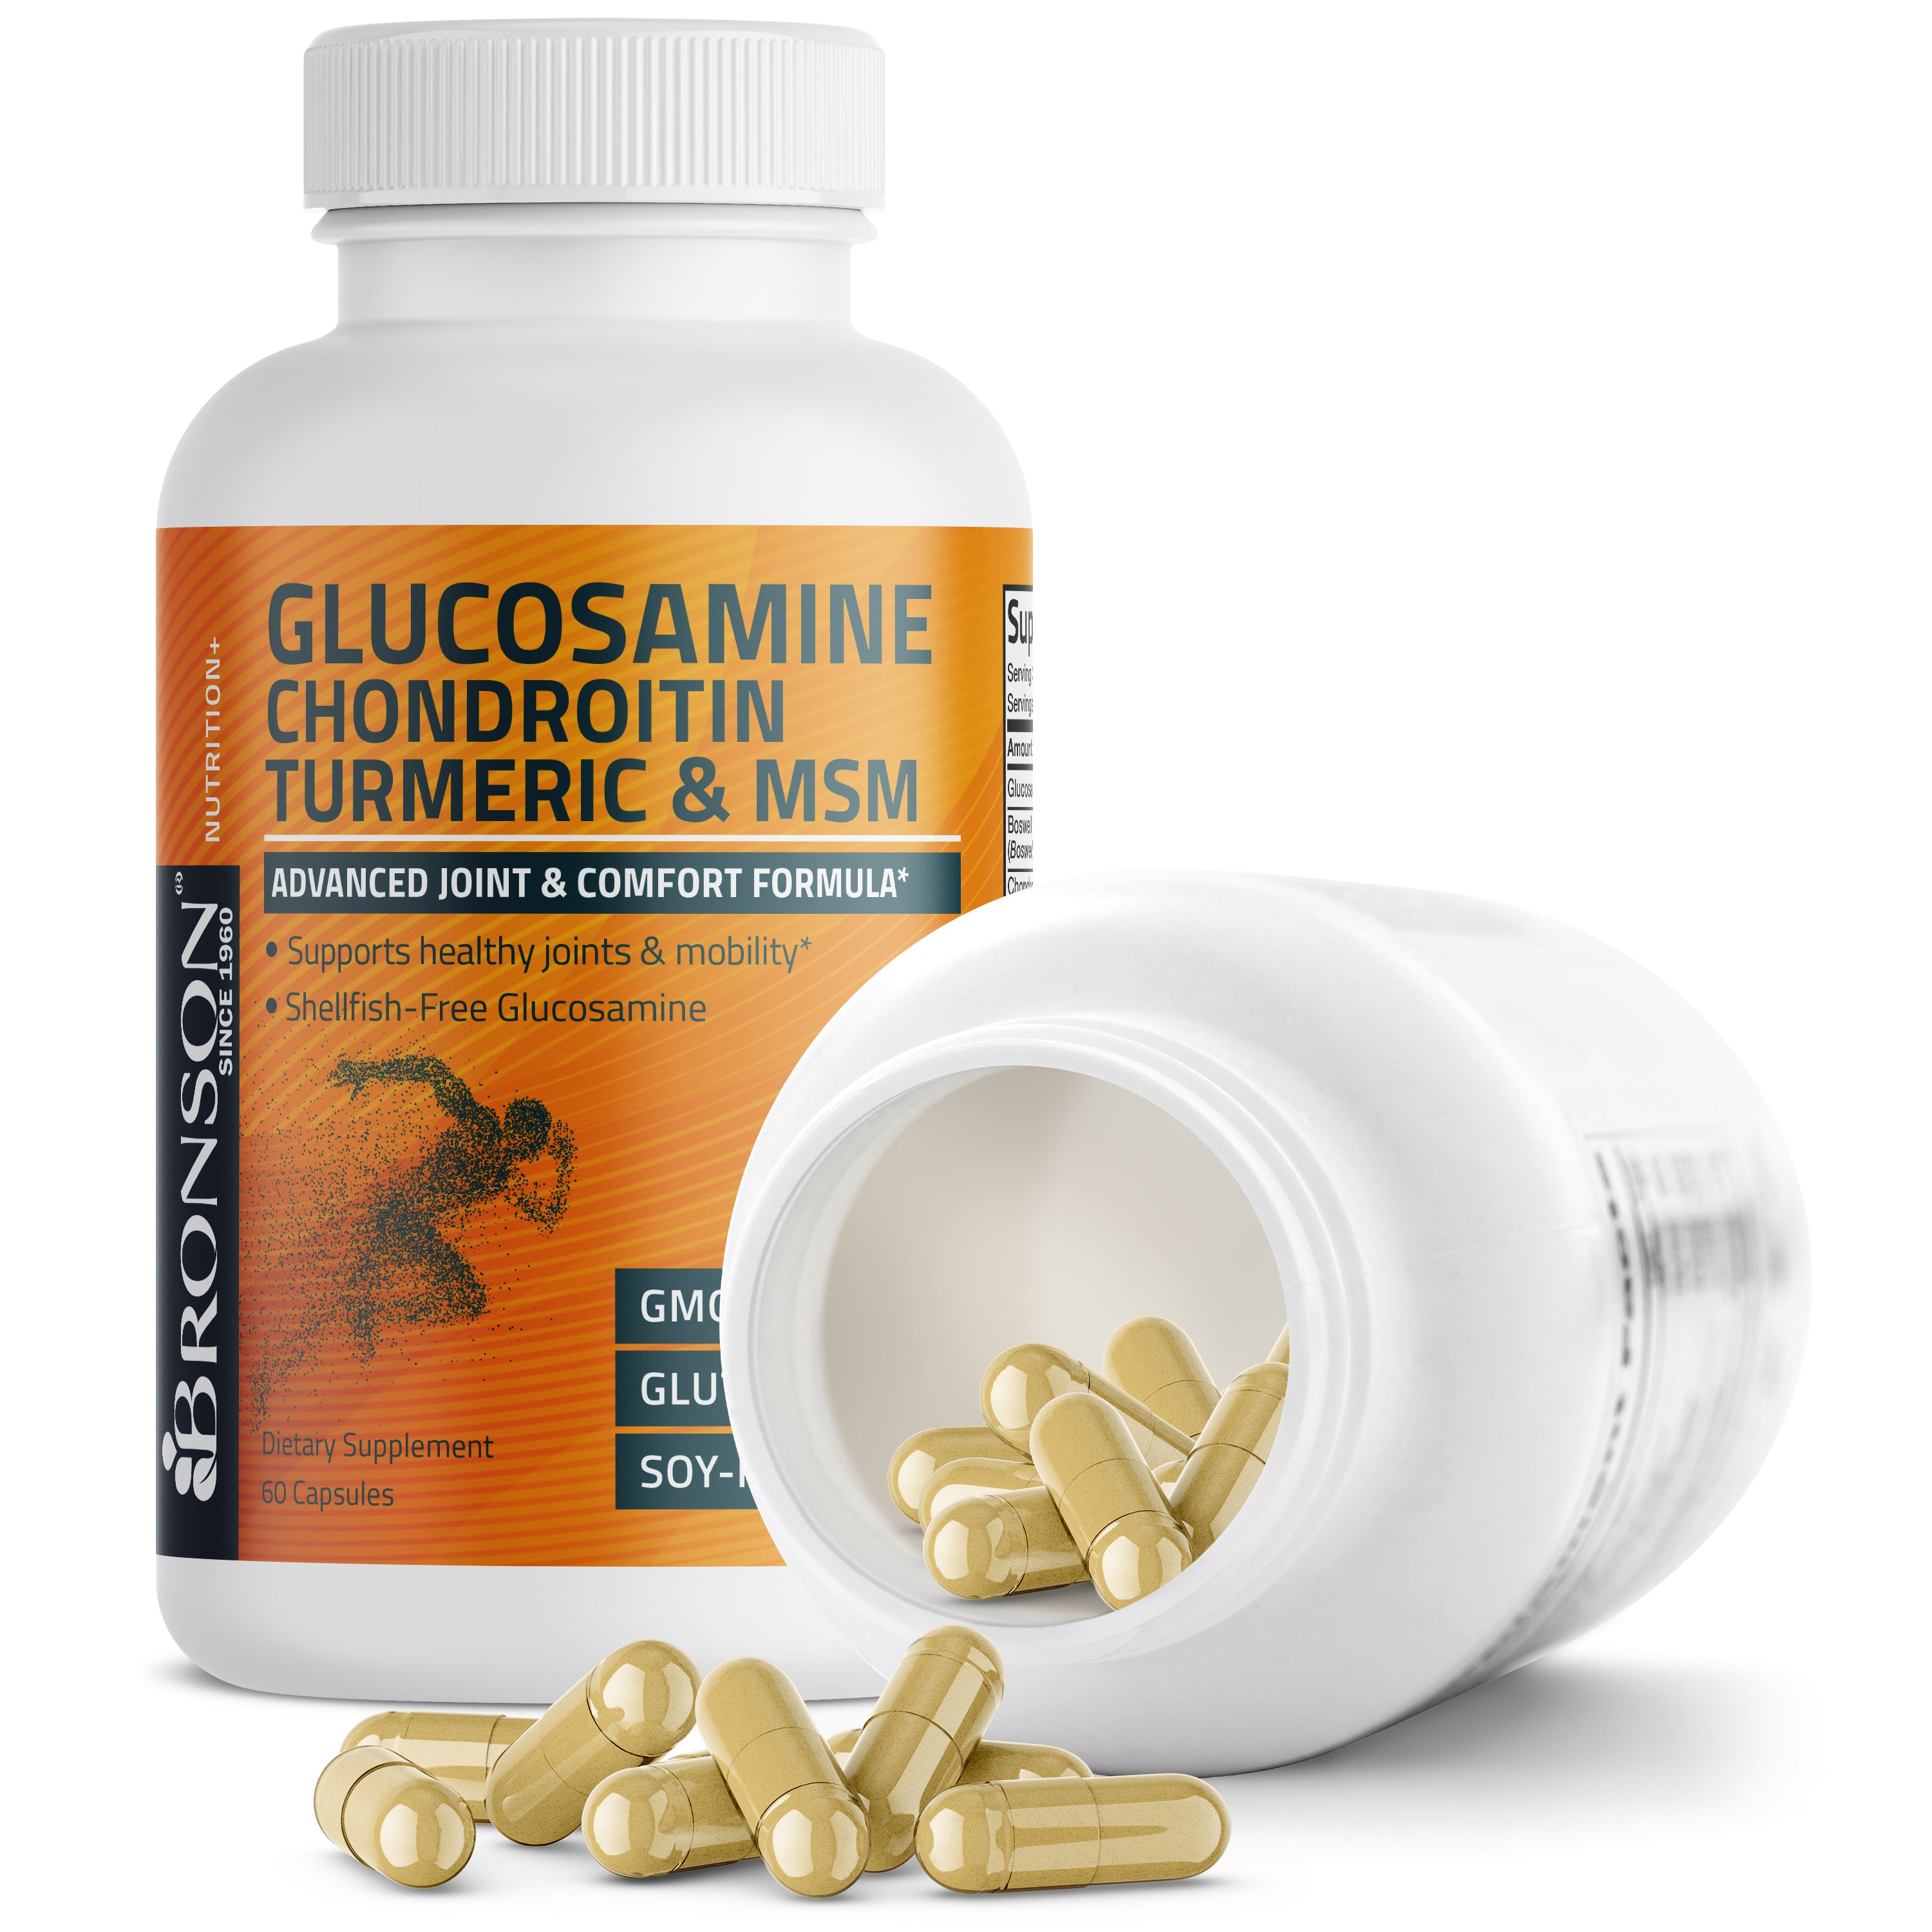 Glucosamine Chondroitin Turmeric & MSM view 5 of 6